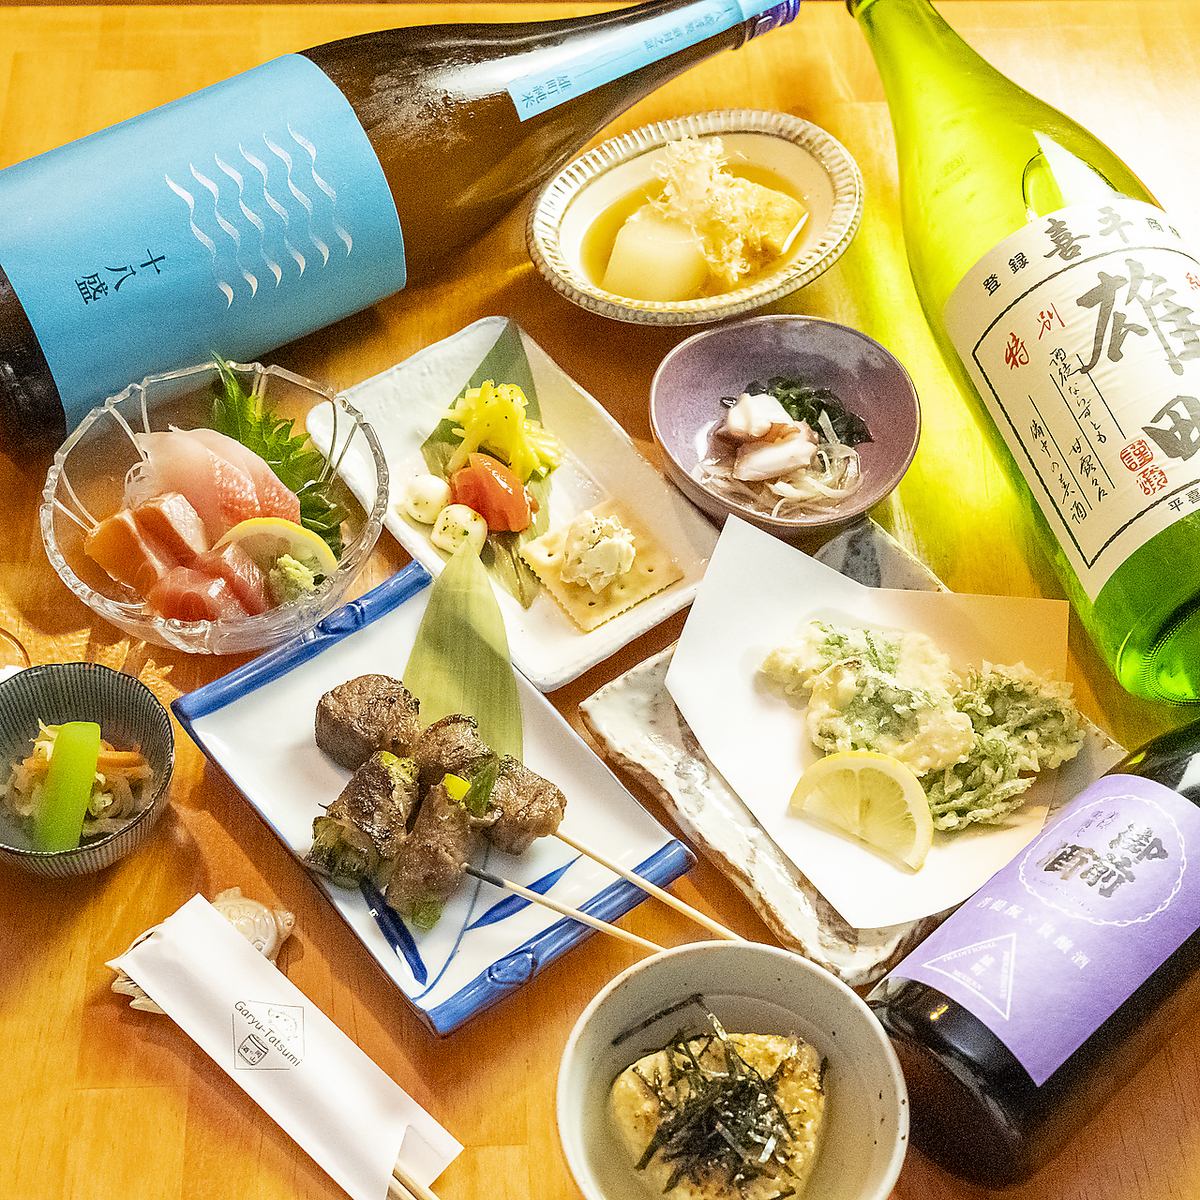 오카야마현산을 고집한 요리와 현내 술창고의 토속주를 함께 즐길 수 있습니다♪